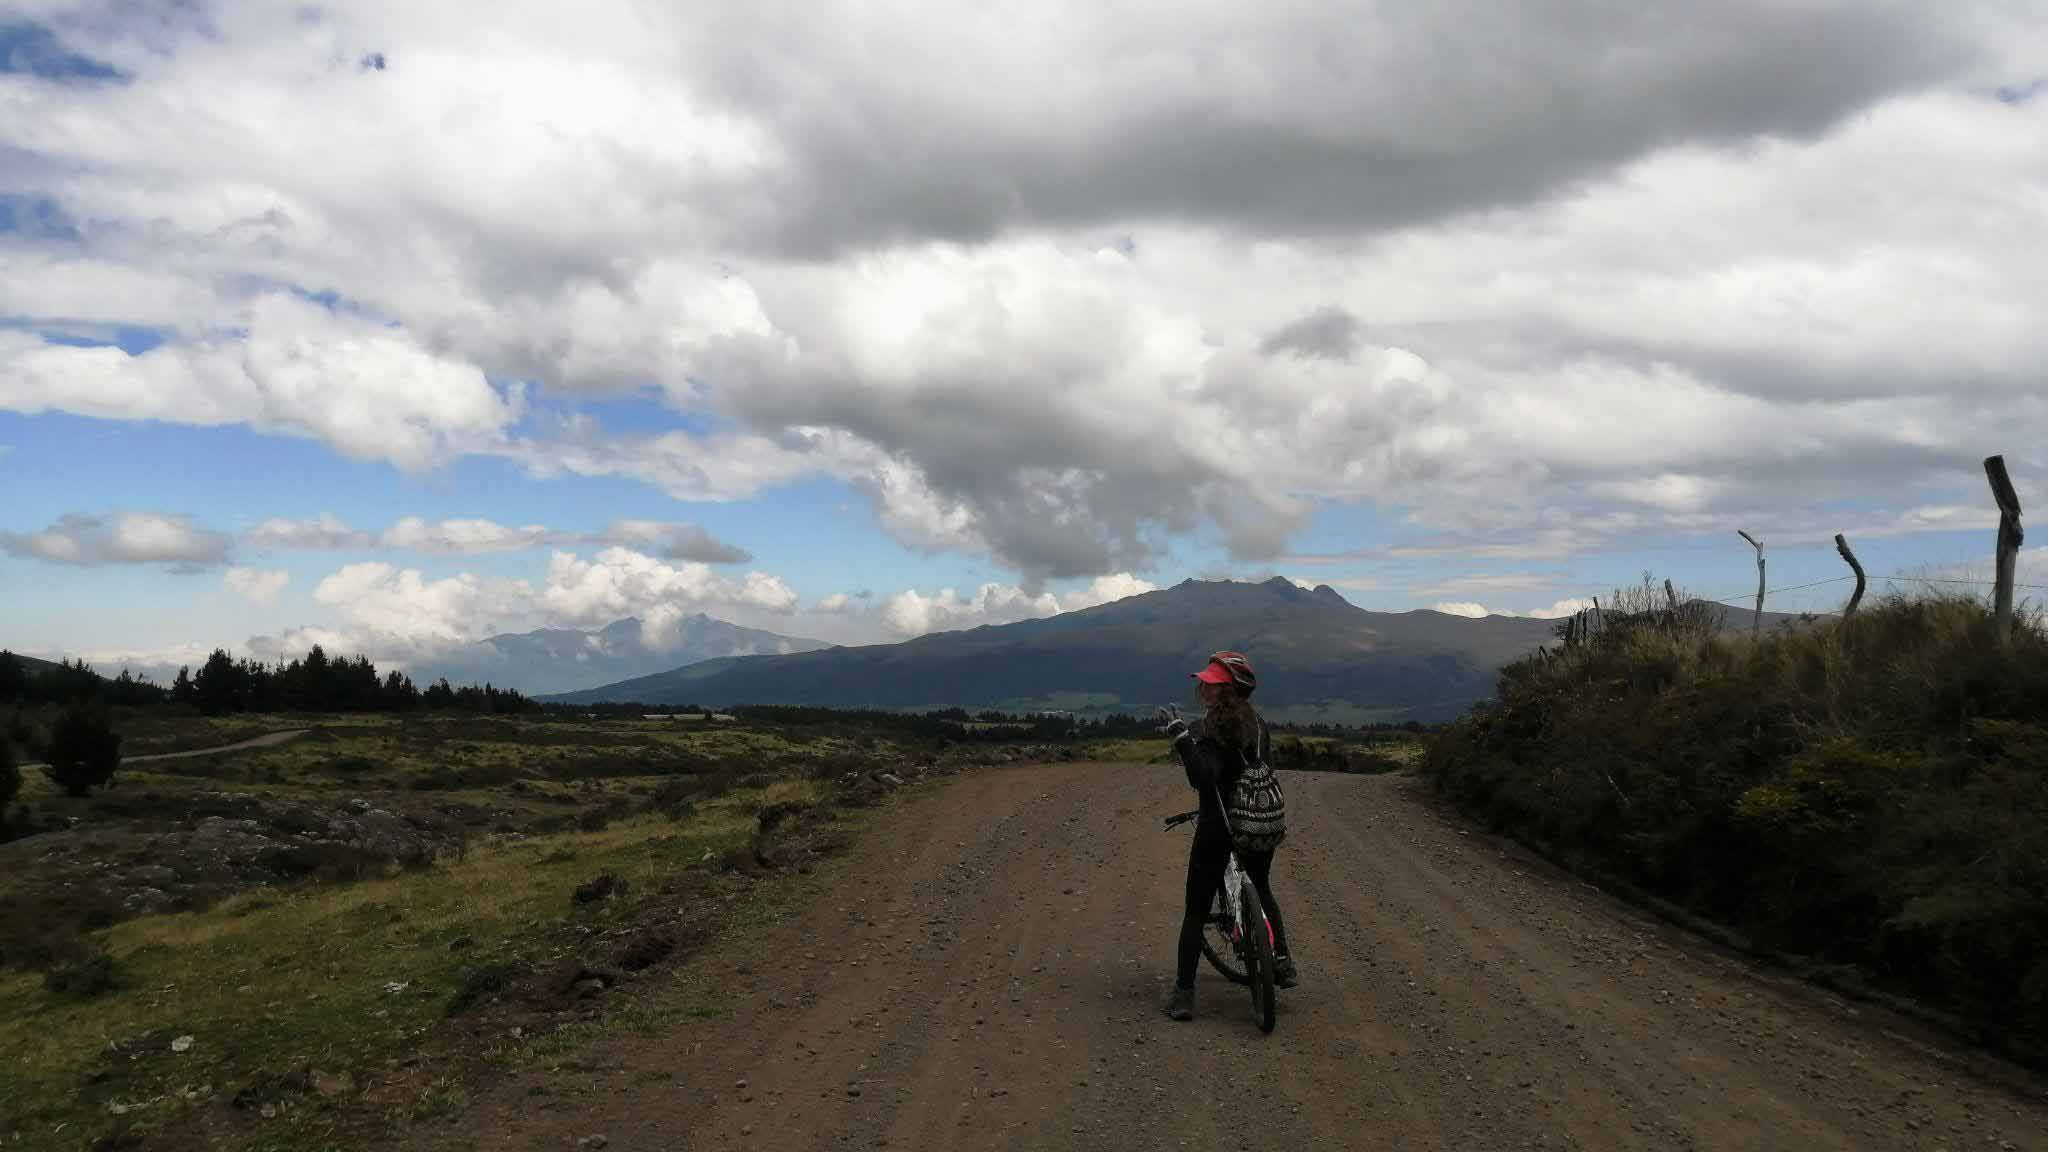 Cotopaxi downhill biking and climbing trip